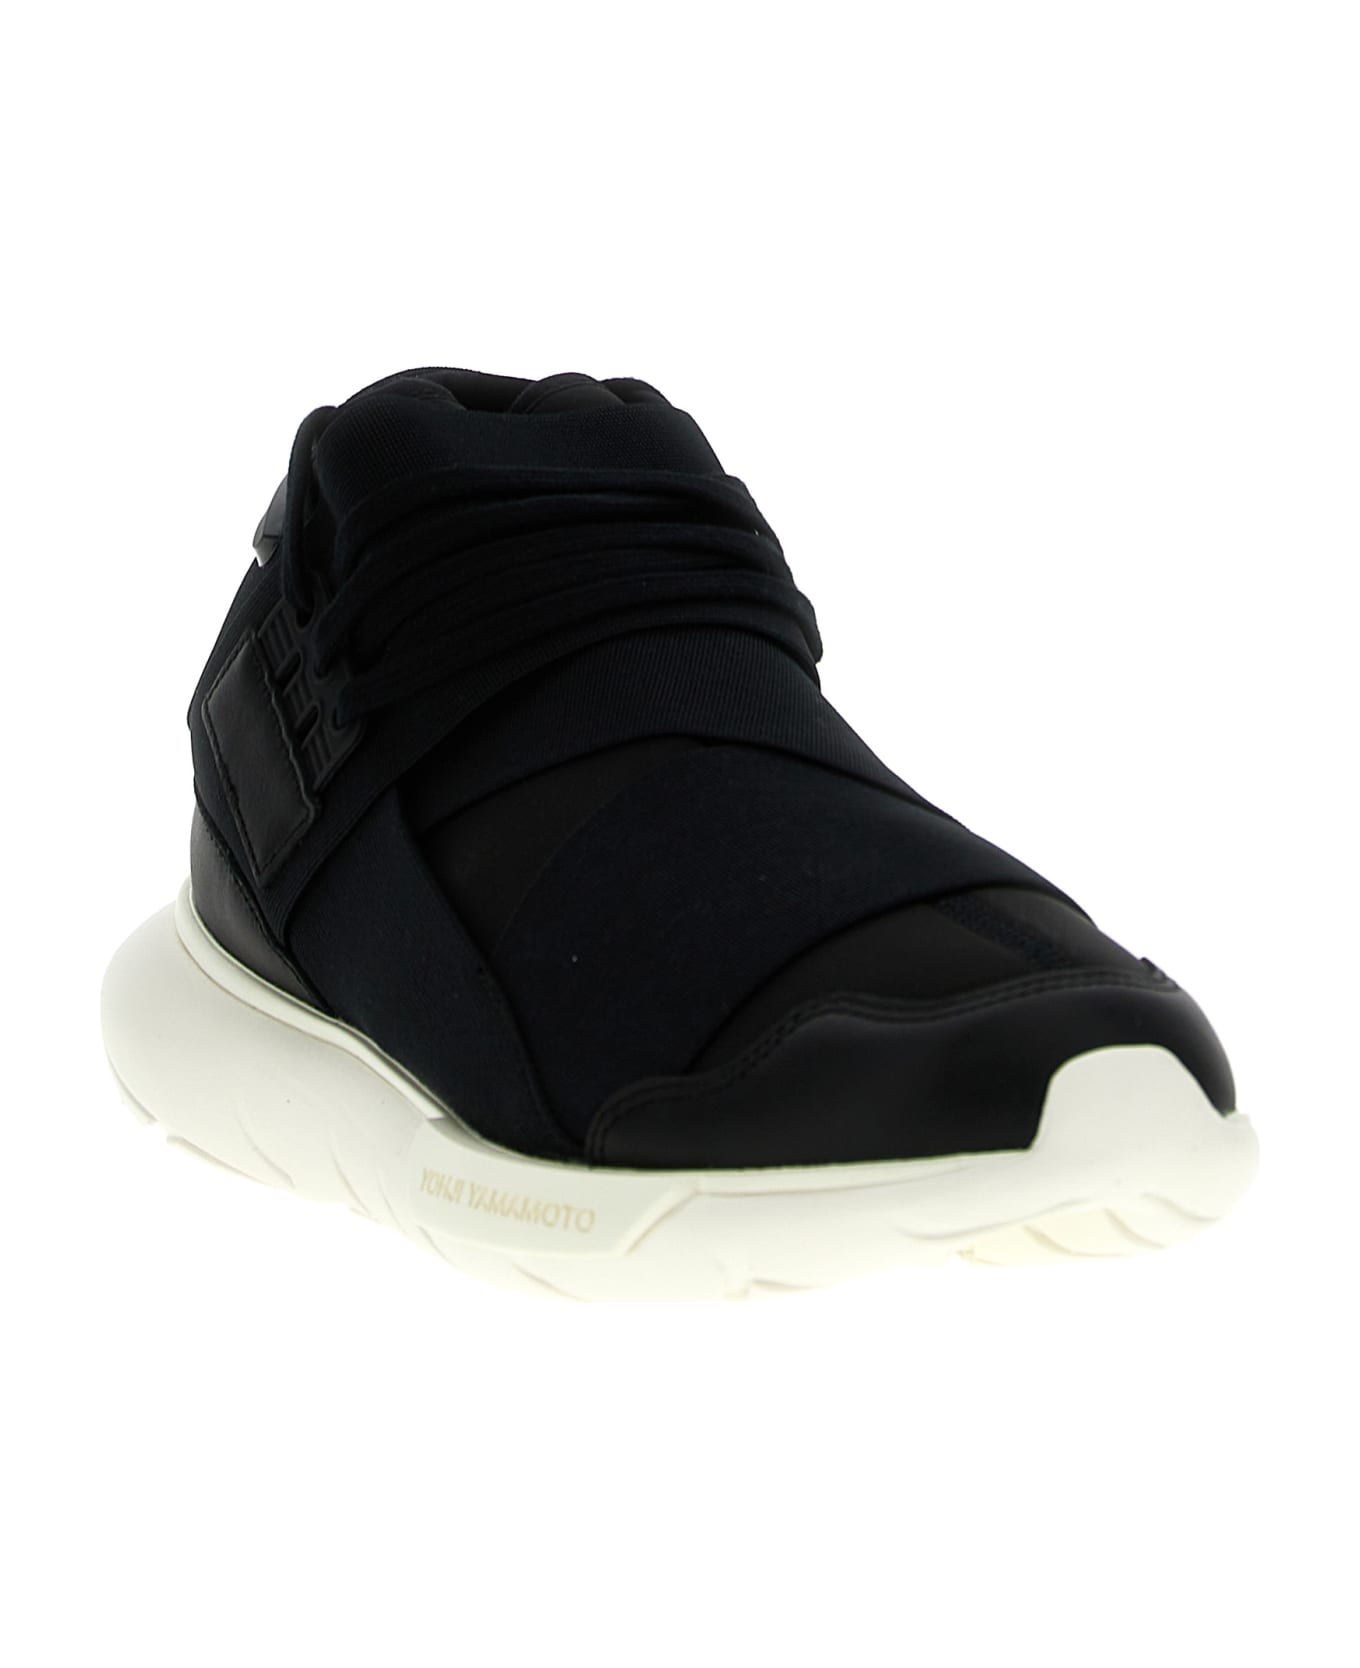 Y-3 'qasa' Sneakers - White/Black